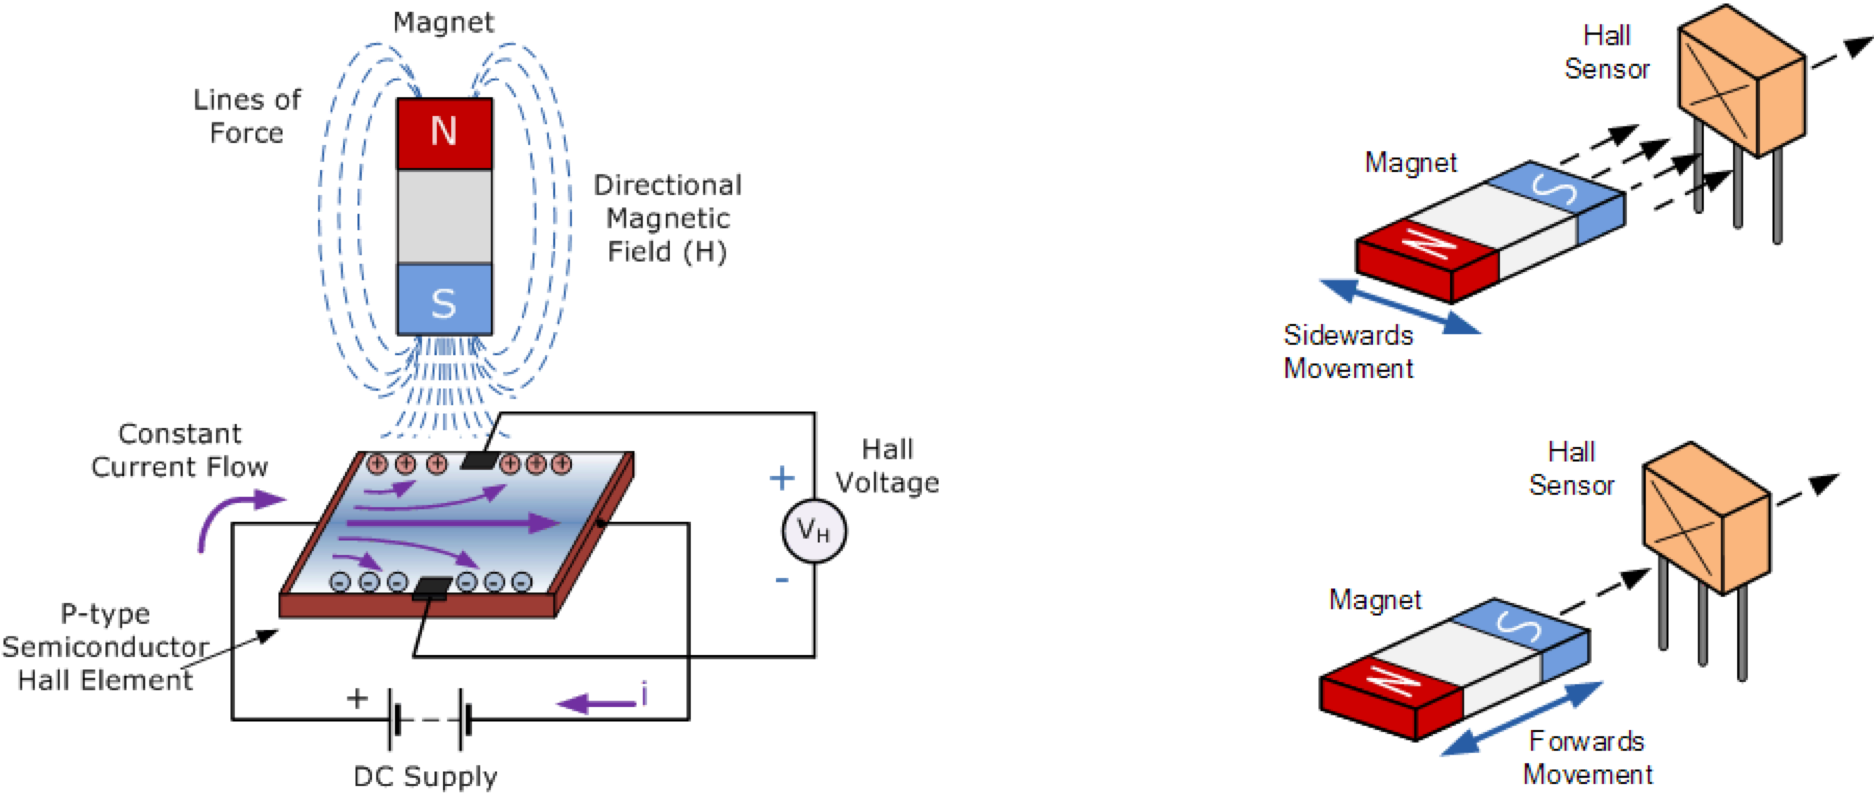 【航天资料7】核热火箭发动机系统循环方案分析与设计 - 哔哩哔哩